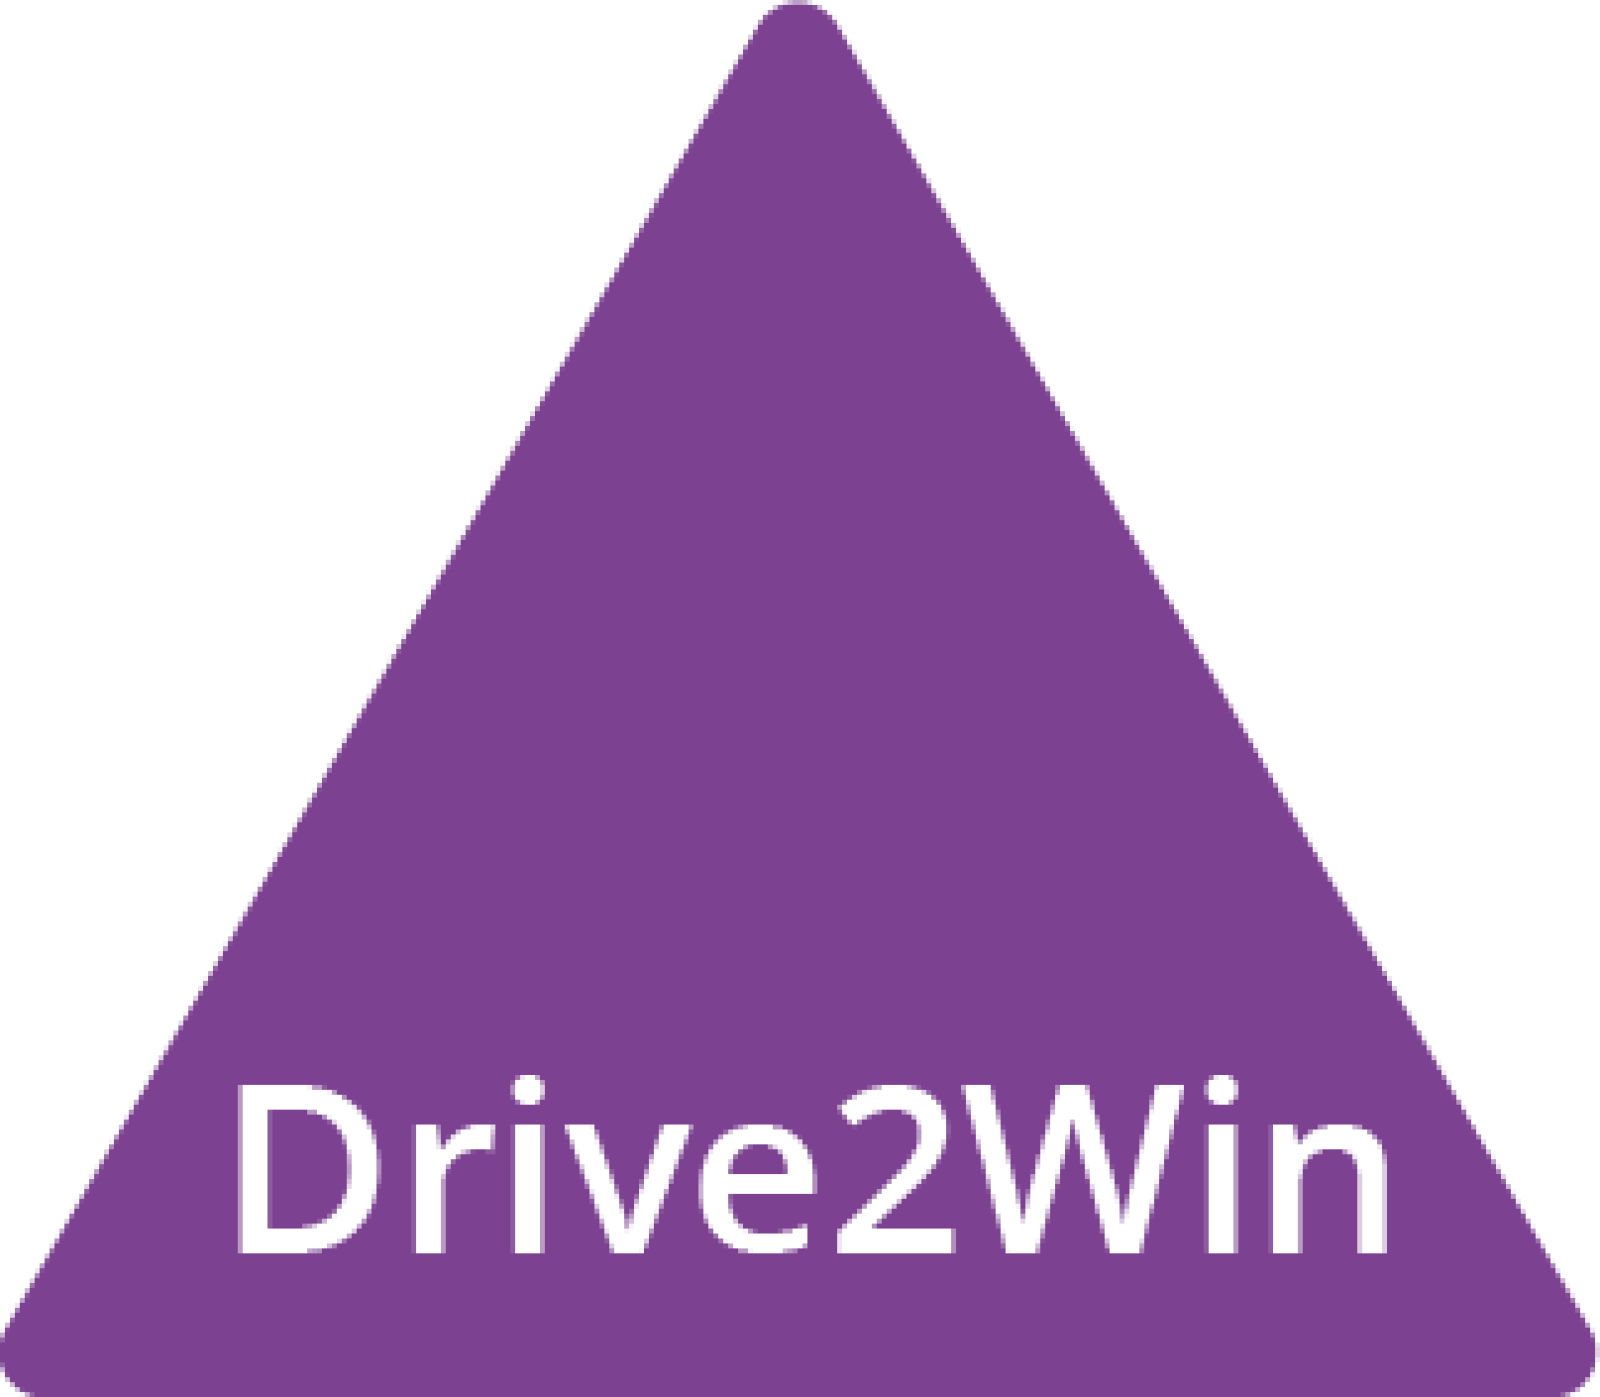 Drive2Win image